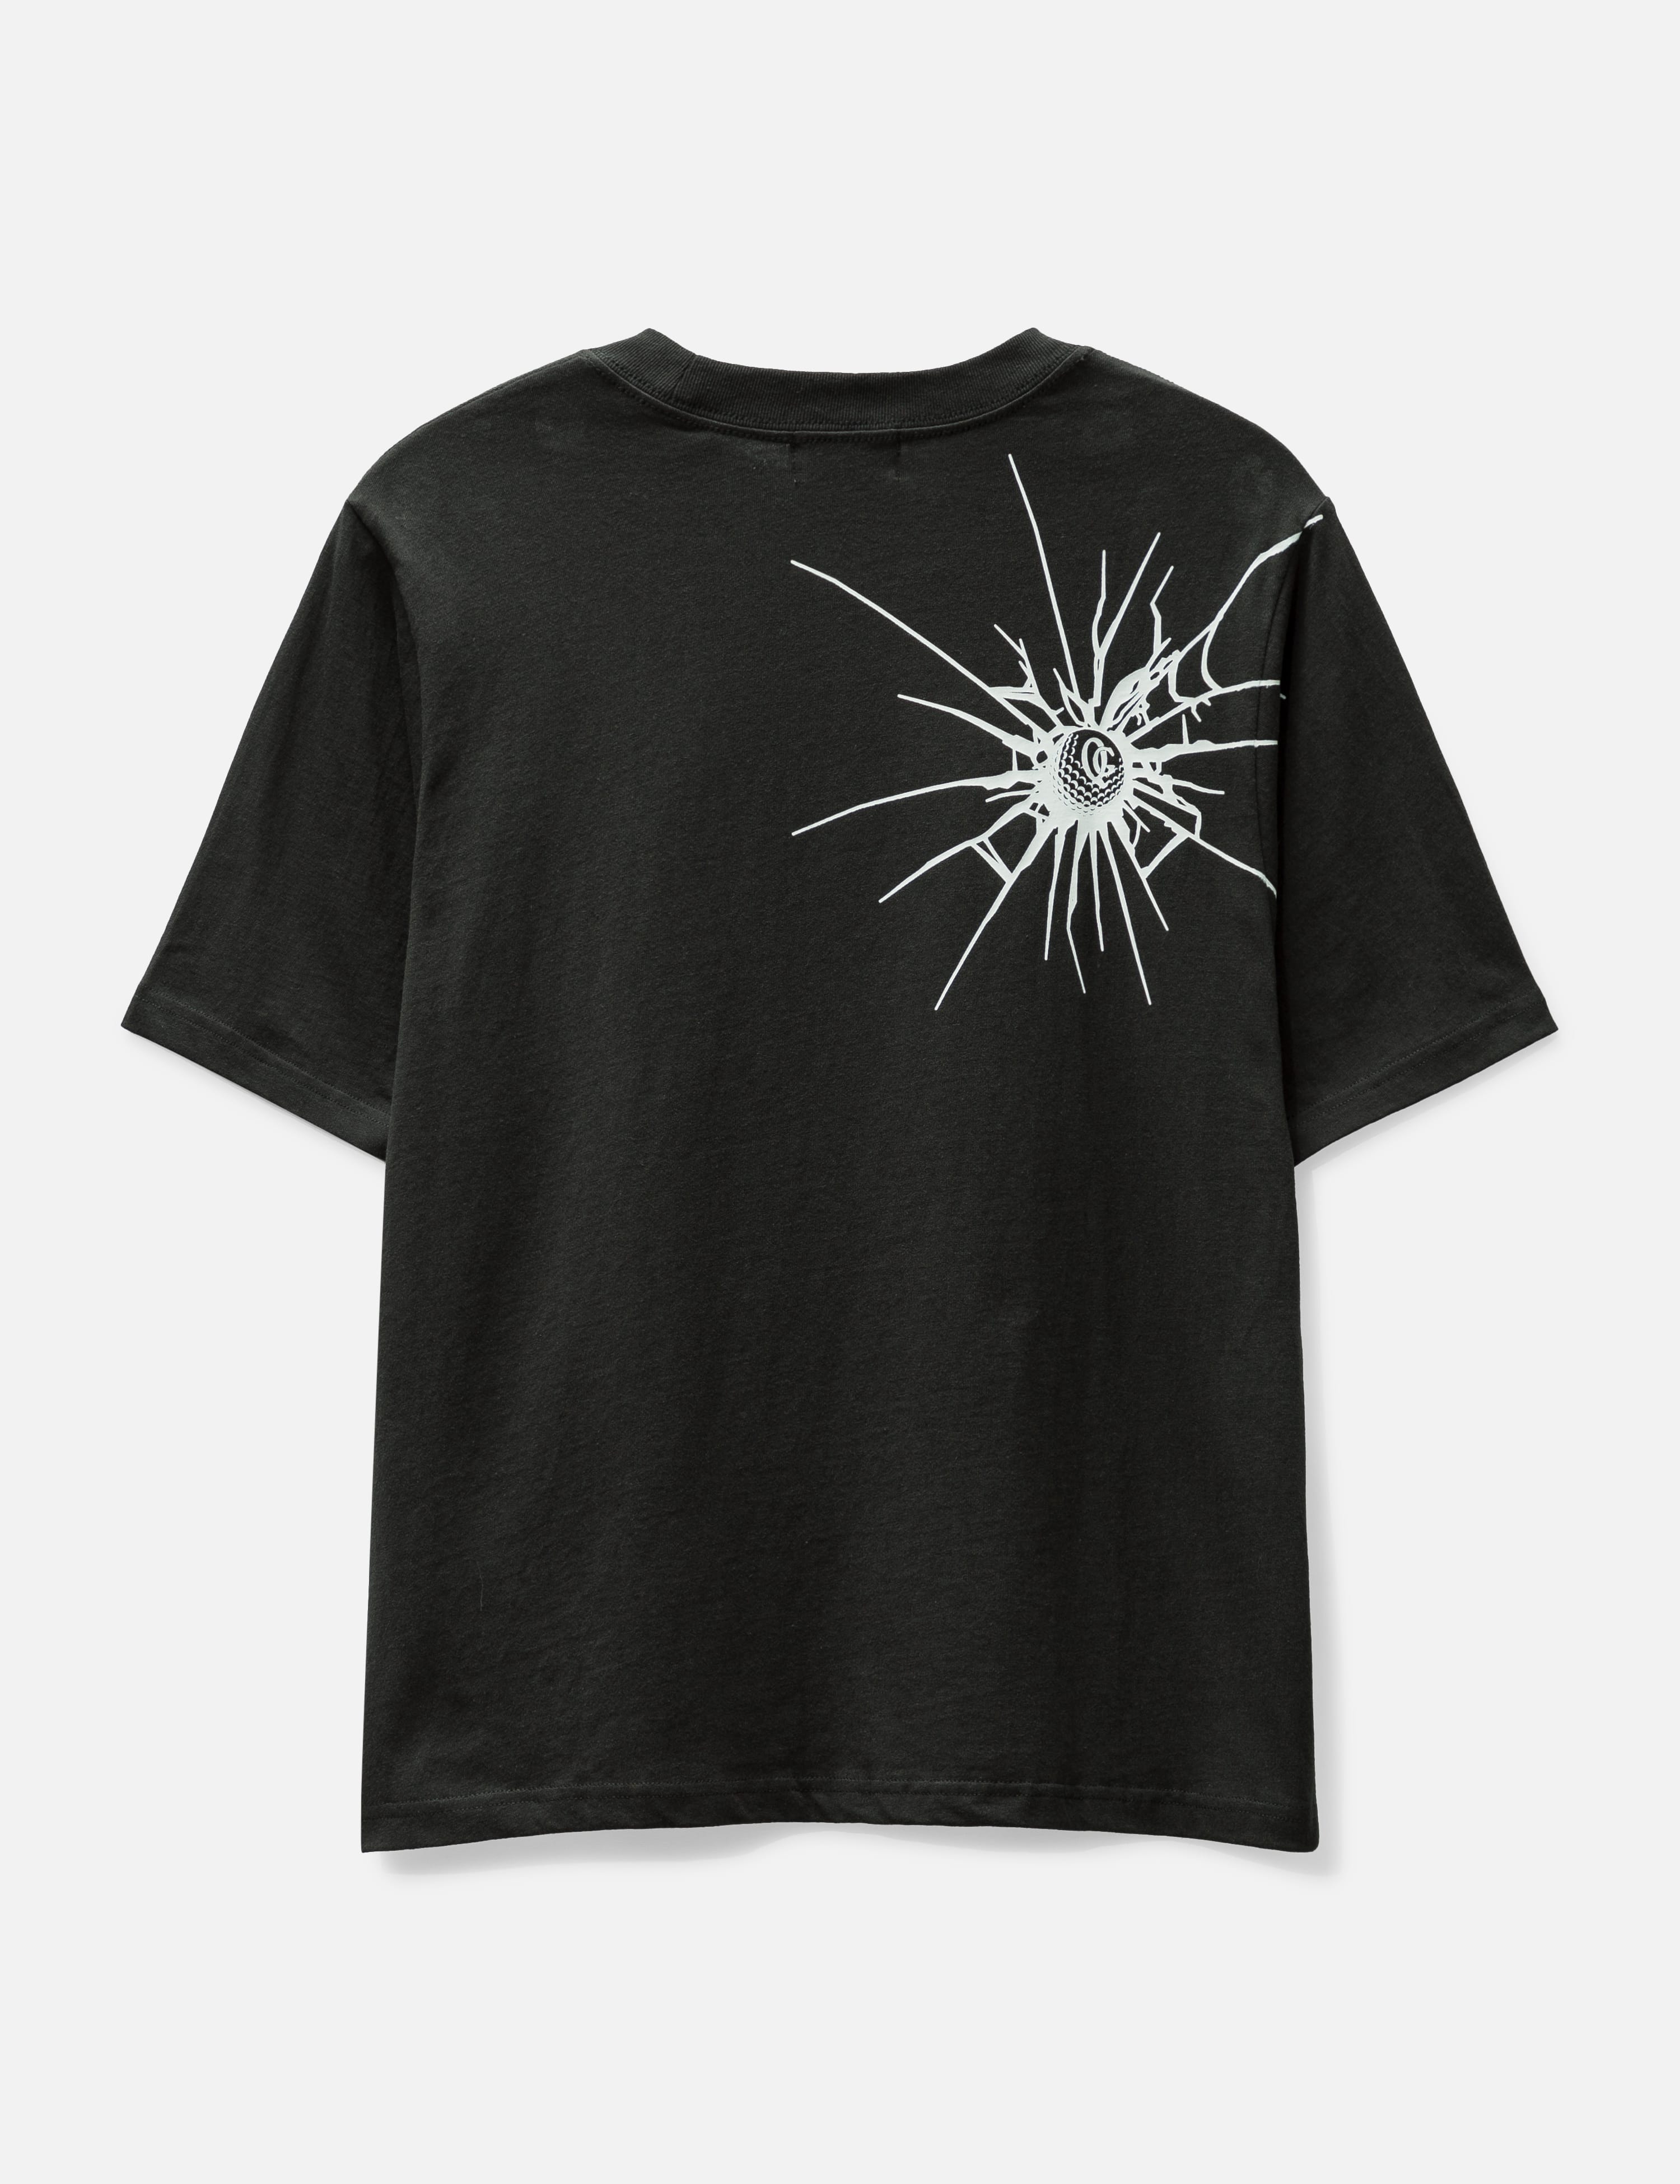 QUIET GOLF - Shatter T-shirt | HBX - HYPEBEAST 為您搜羅全球潮流